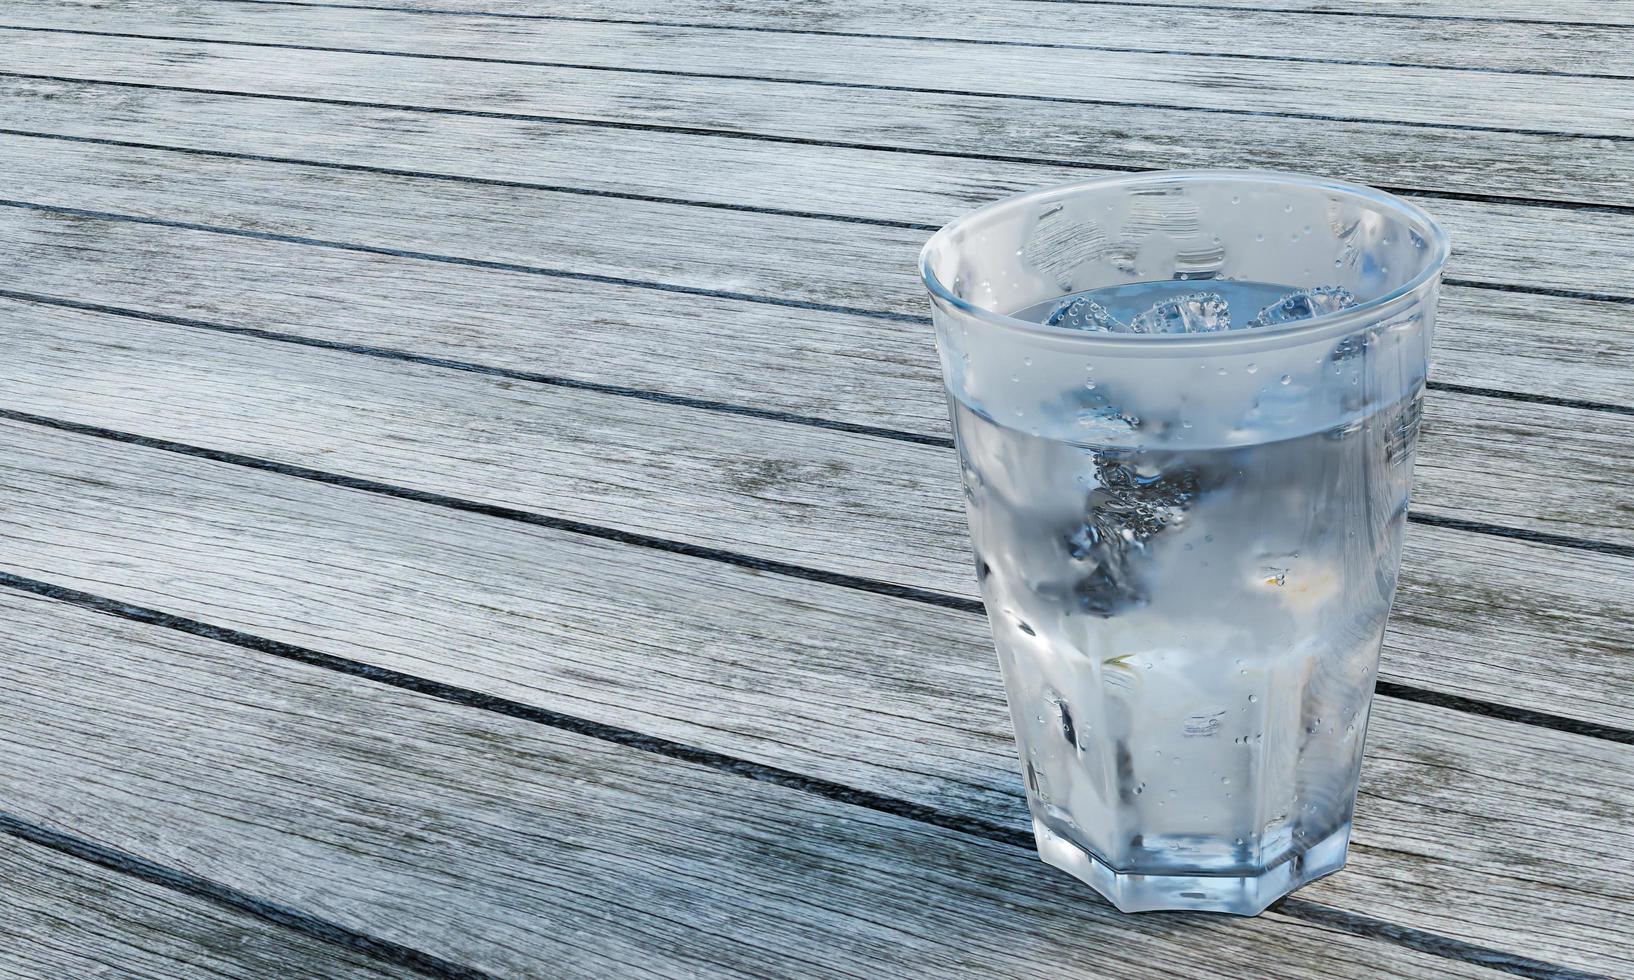 eau claire ou soda dans un verre clair pour la bière. eau froide dans un verre avec des glaçons, des bulles dans le verre. placé sur un sol en planches, une lumière brille dans le verre. rendu 3d photo